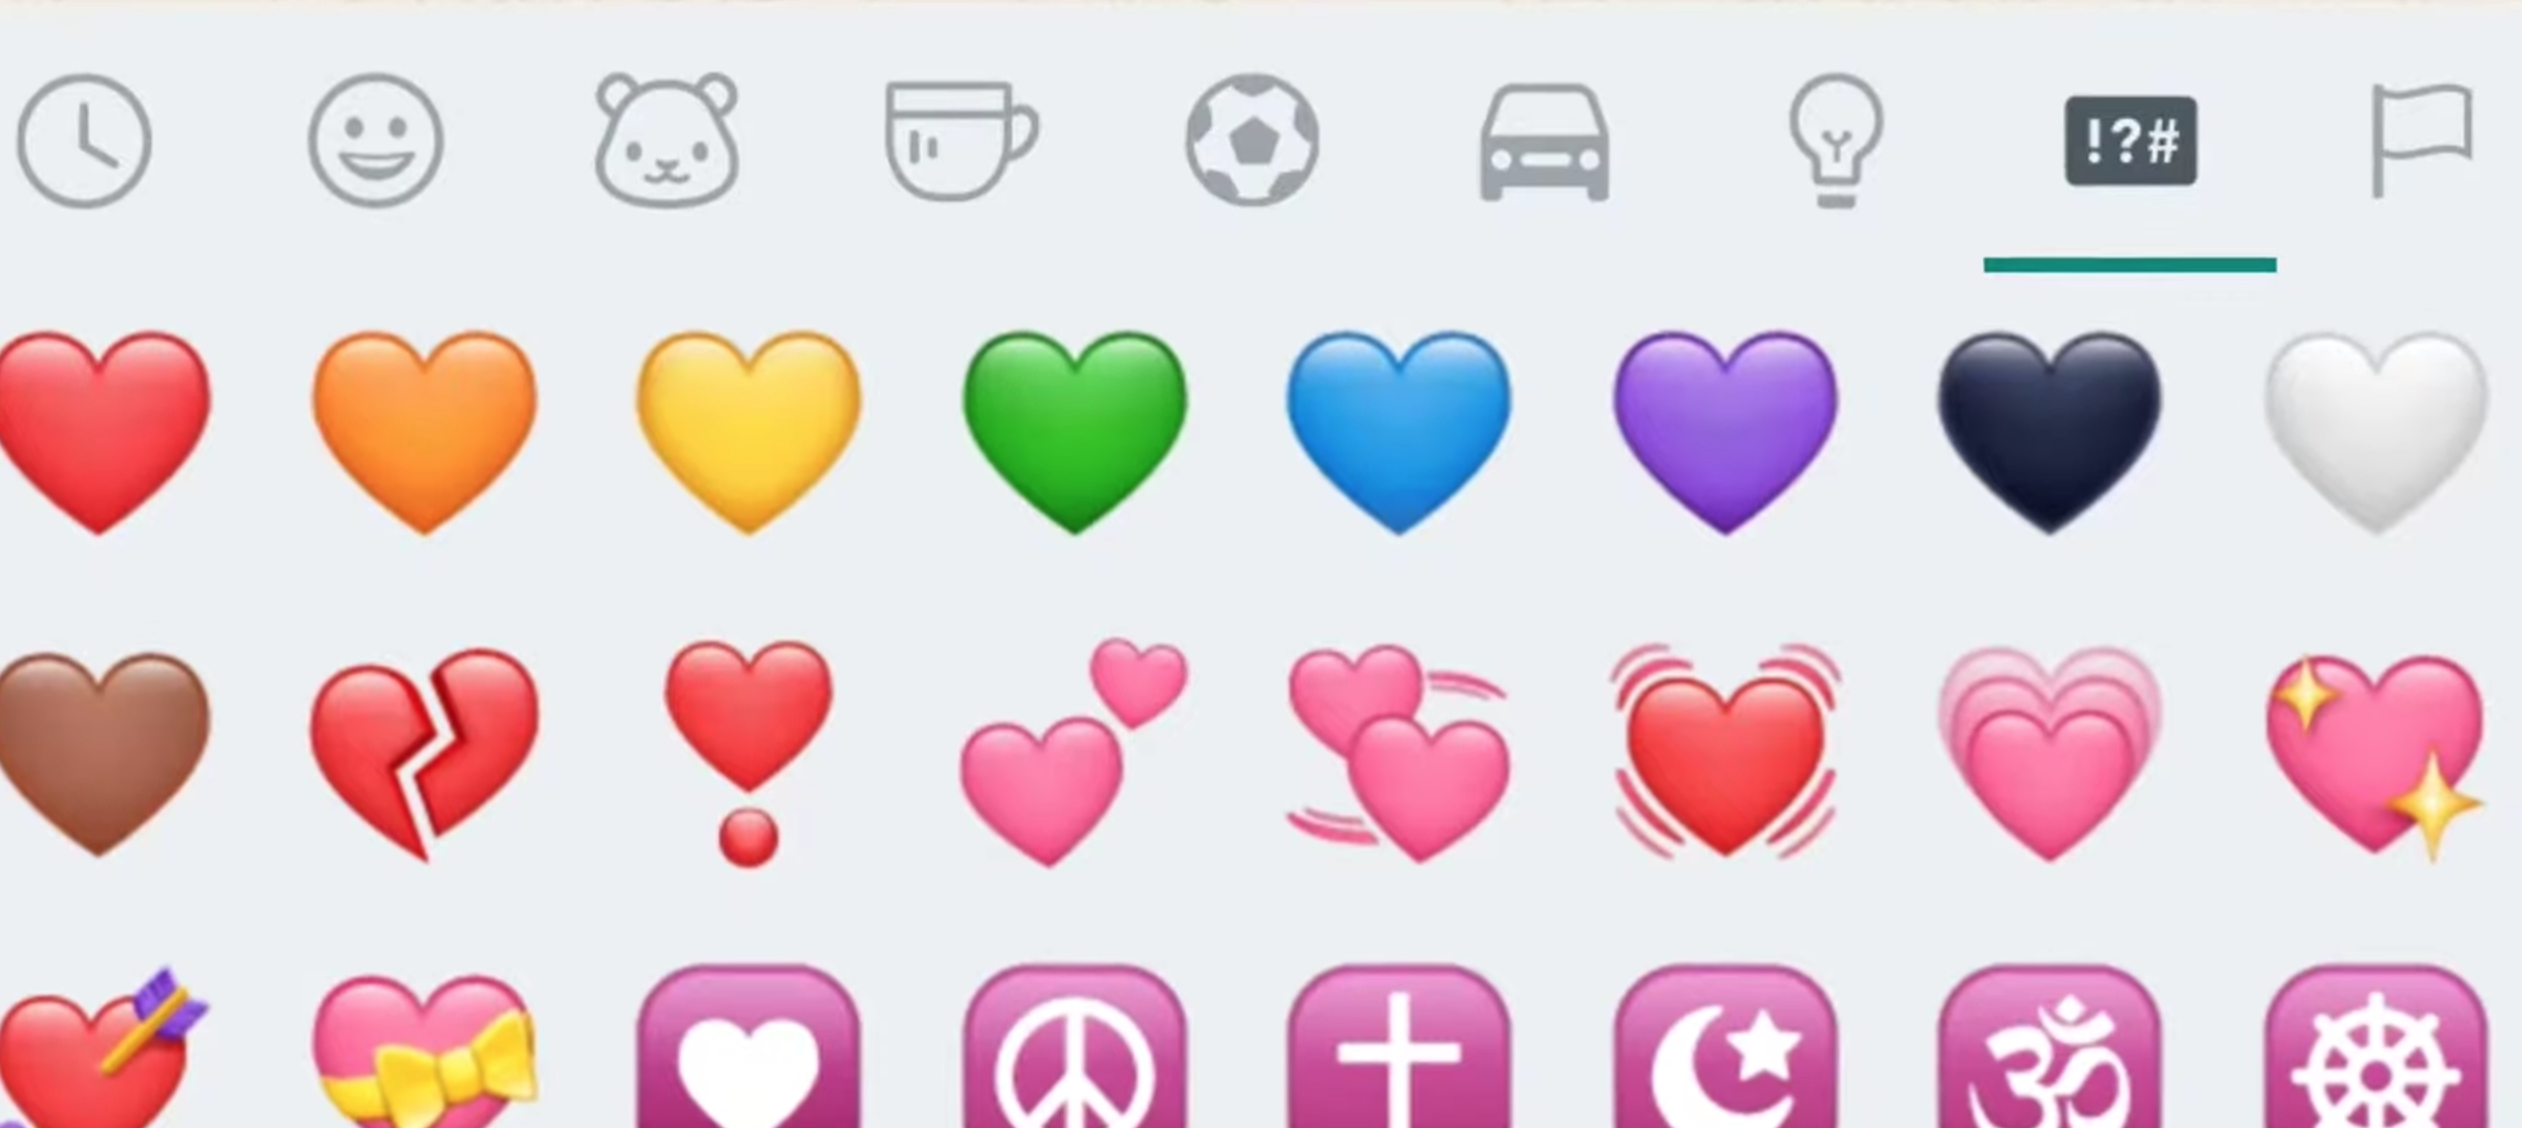  Fìor bhrìgh nan emojis cridhe a tha air WhatsApp